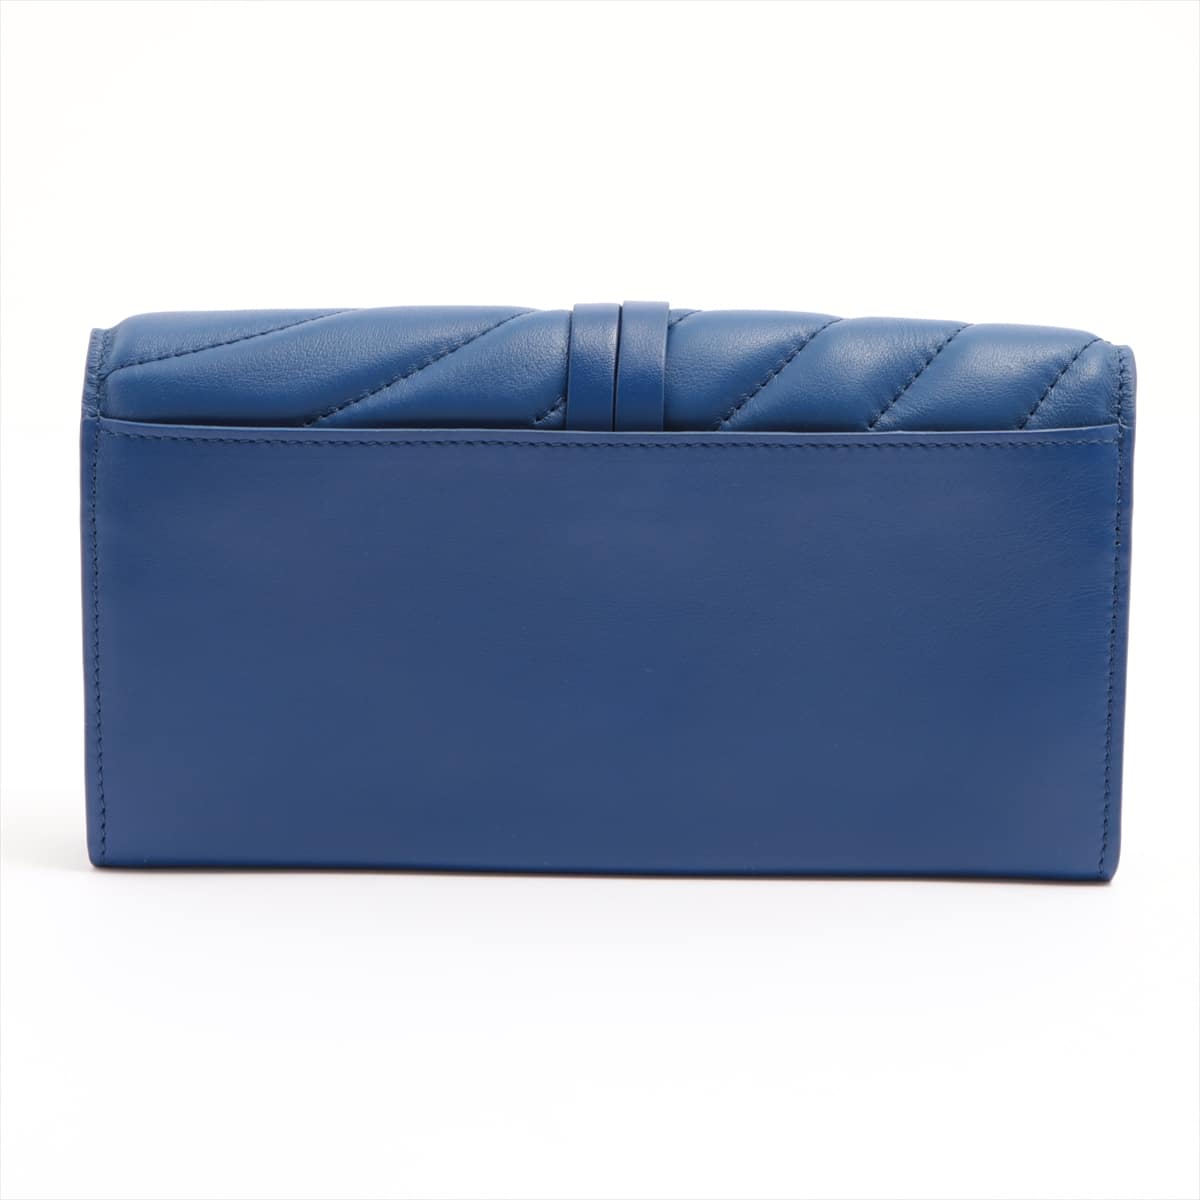 Chloe Leather Wallet Blue